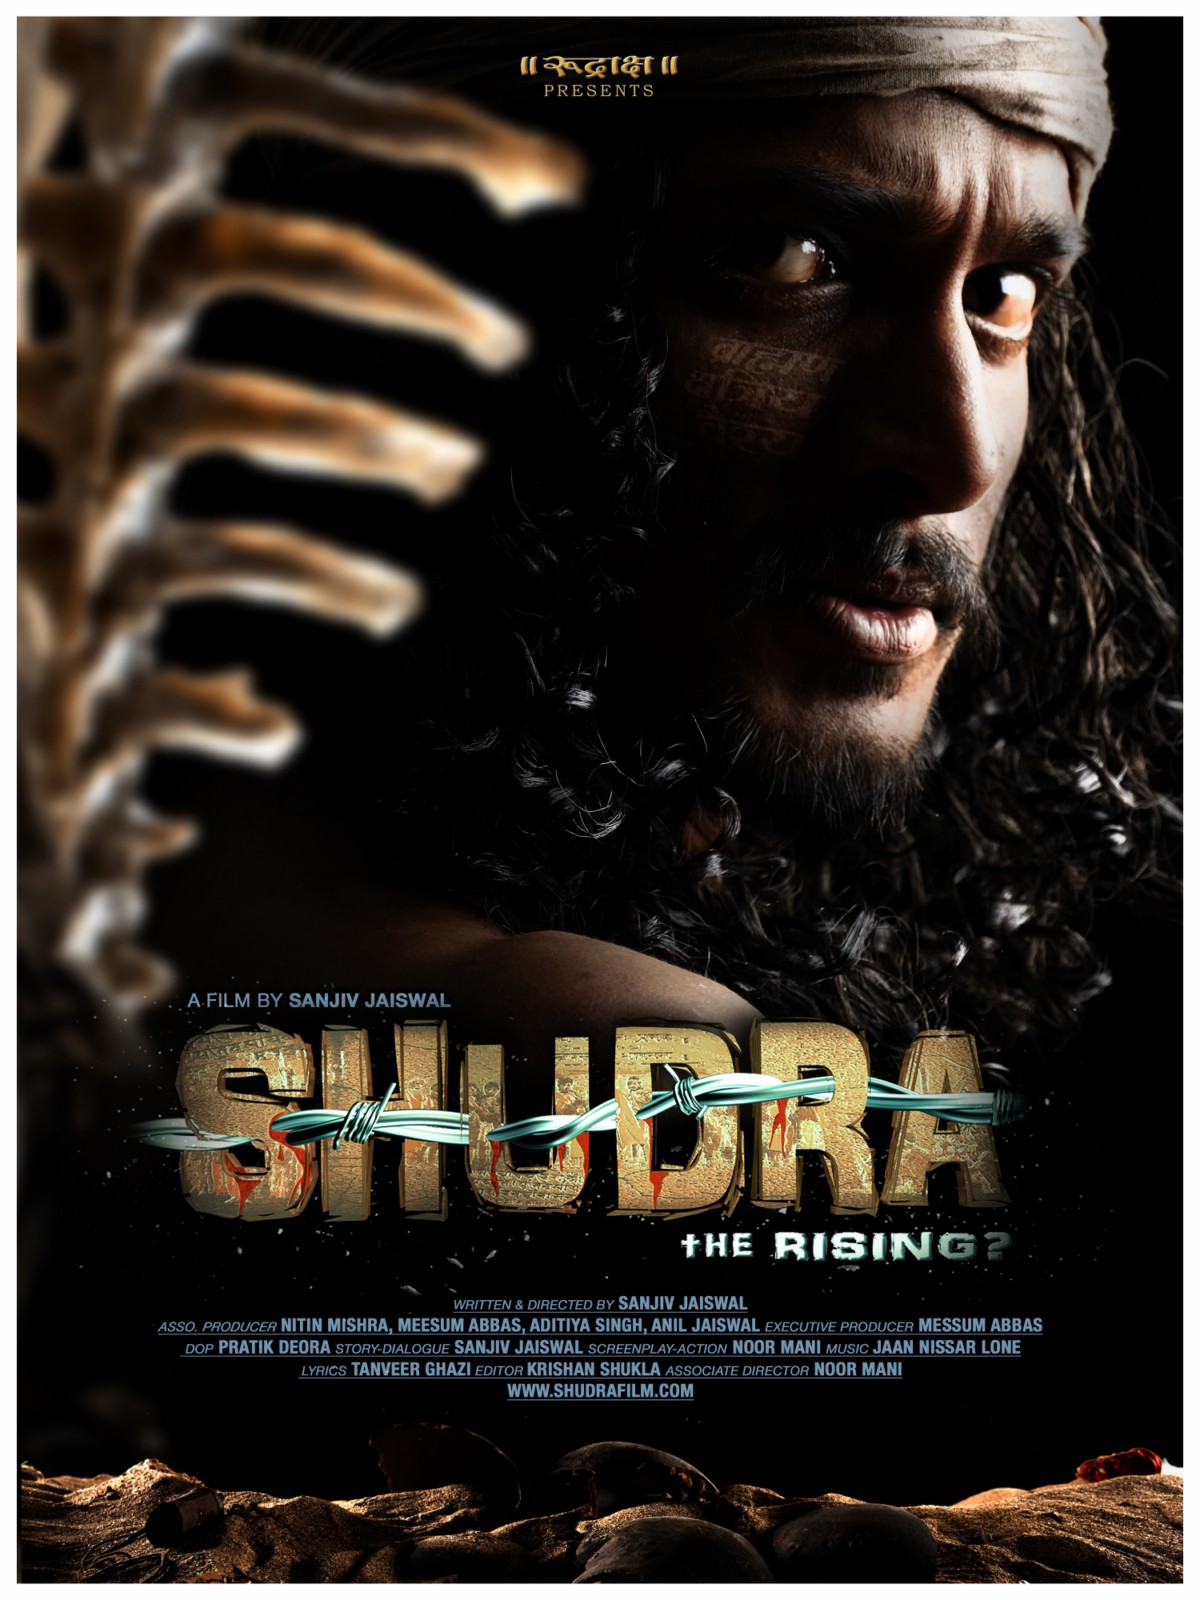 Shudra The Rising - Movie Poster #2 (Original)